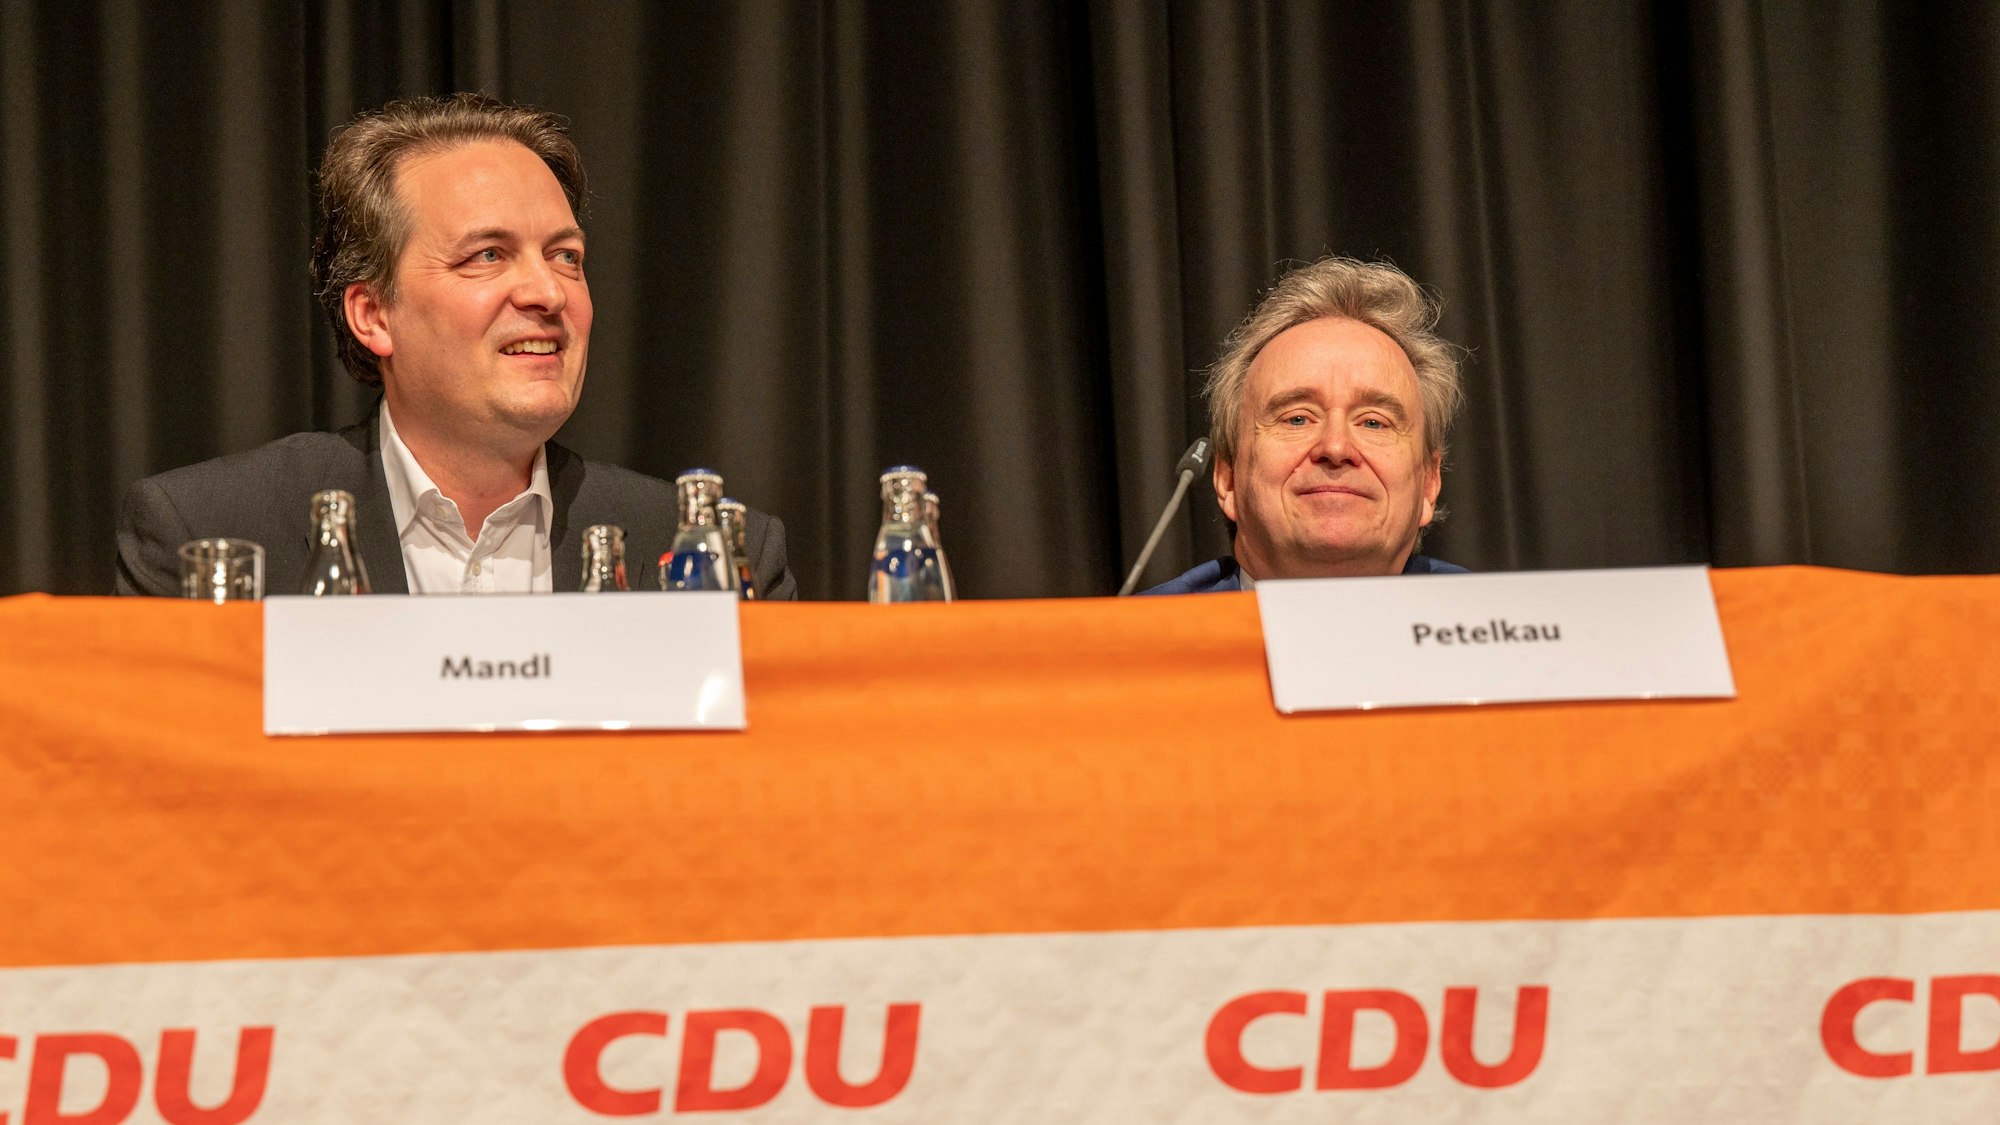 CDU-Parteichef Karl Mandl (rechts) und sein Vorgänger Bernd Petelkau (rechts)